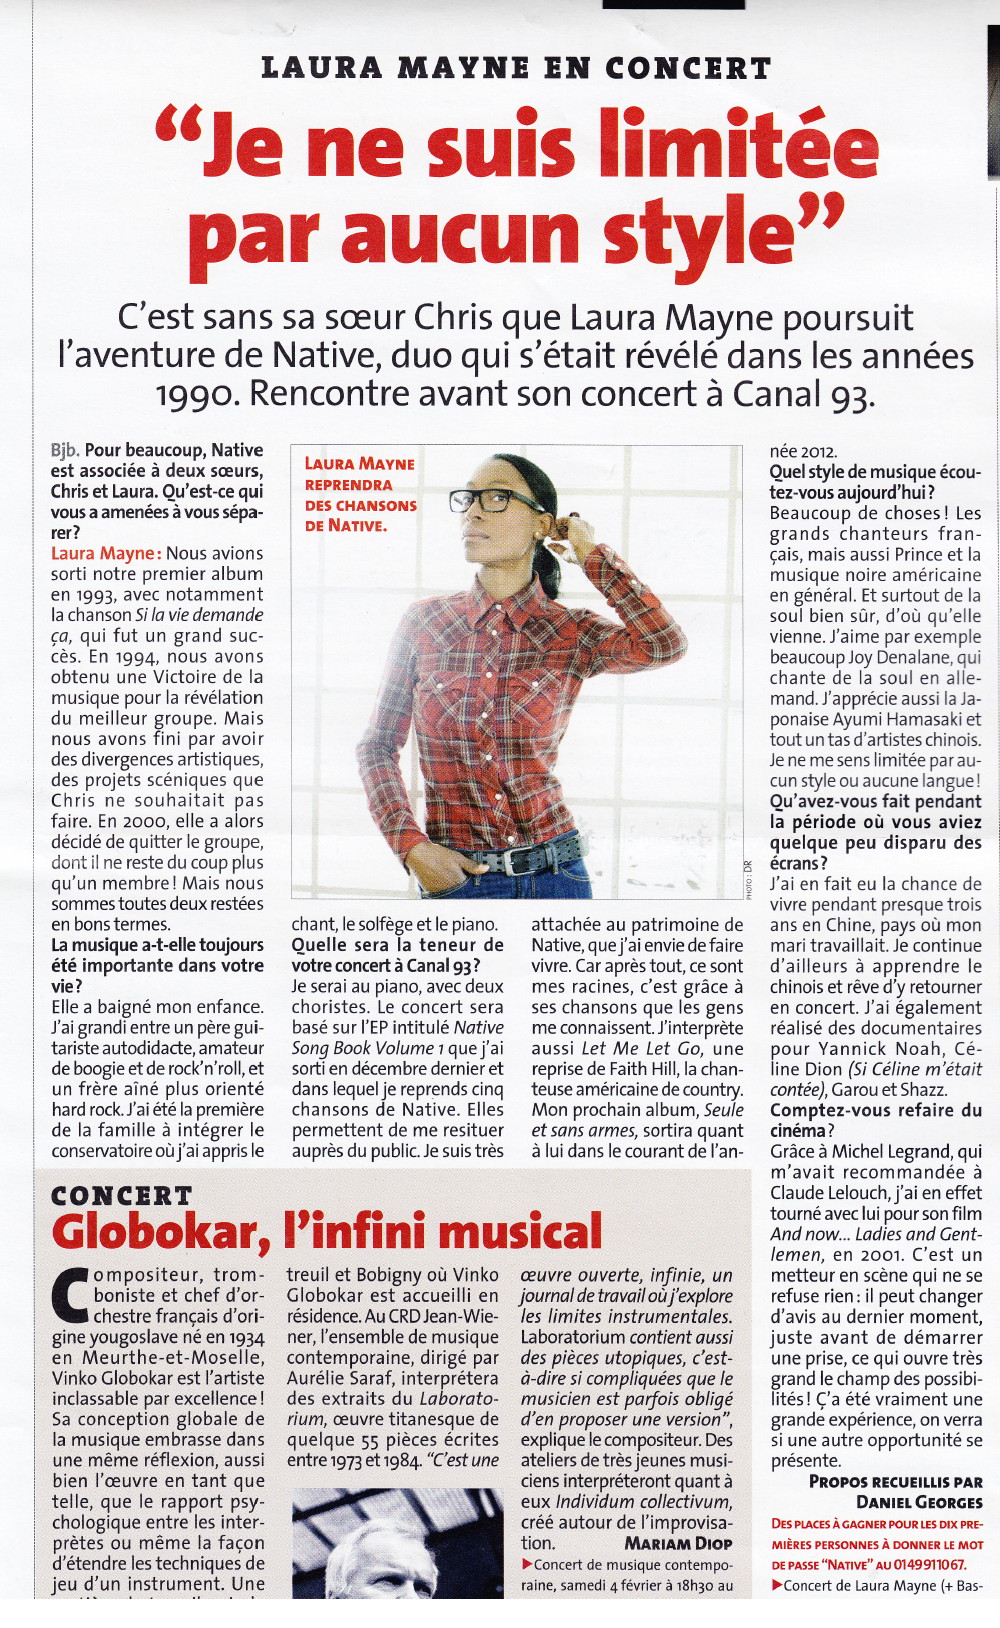 Interview de LAURA MAYNE dans "Bonjour Bobigny" (2 au 8 février 2012)  1202050418571423619397244